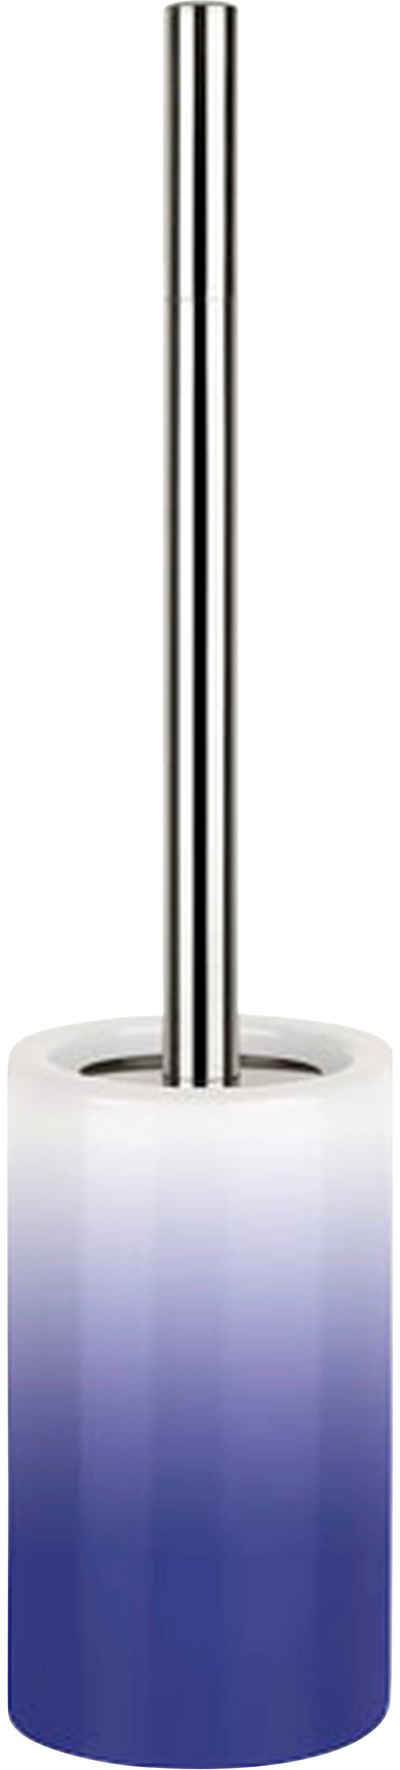 spirella WC-Garnitur TUBE Gradient, Toilettenbürste Hochwertig mit hygienischem Behälter